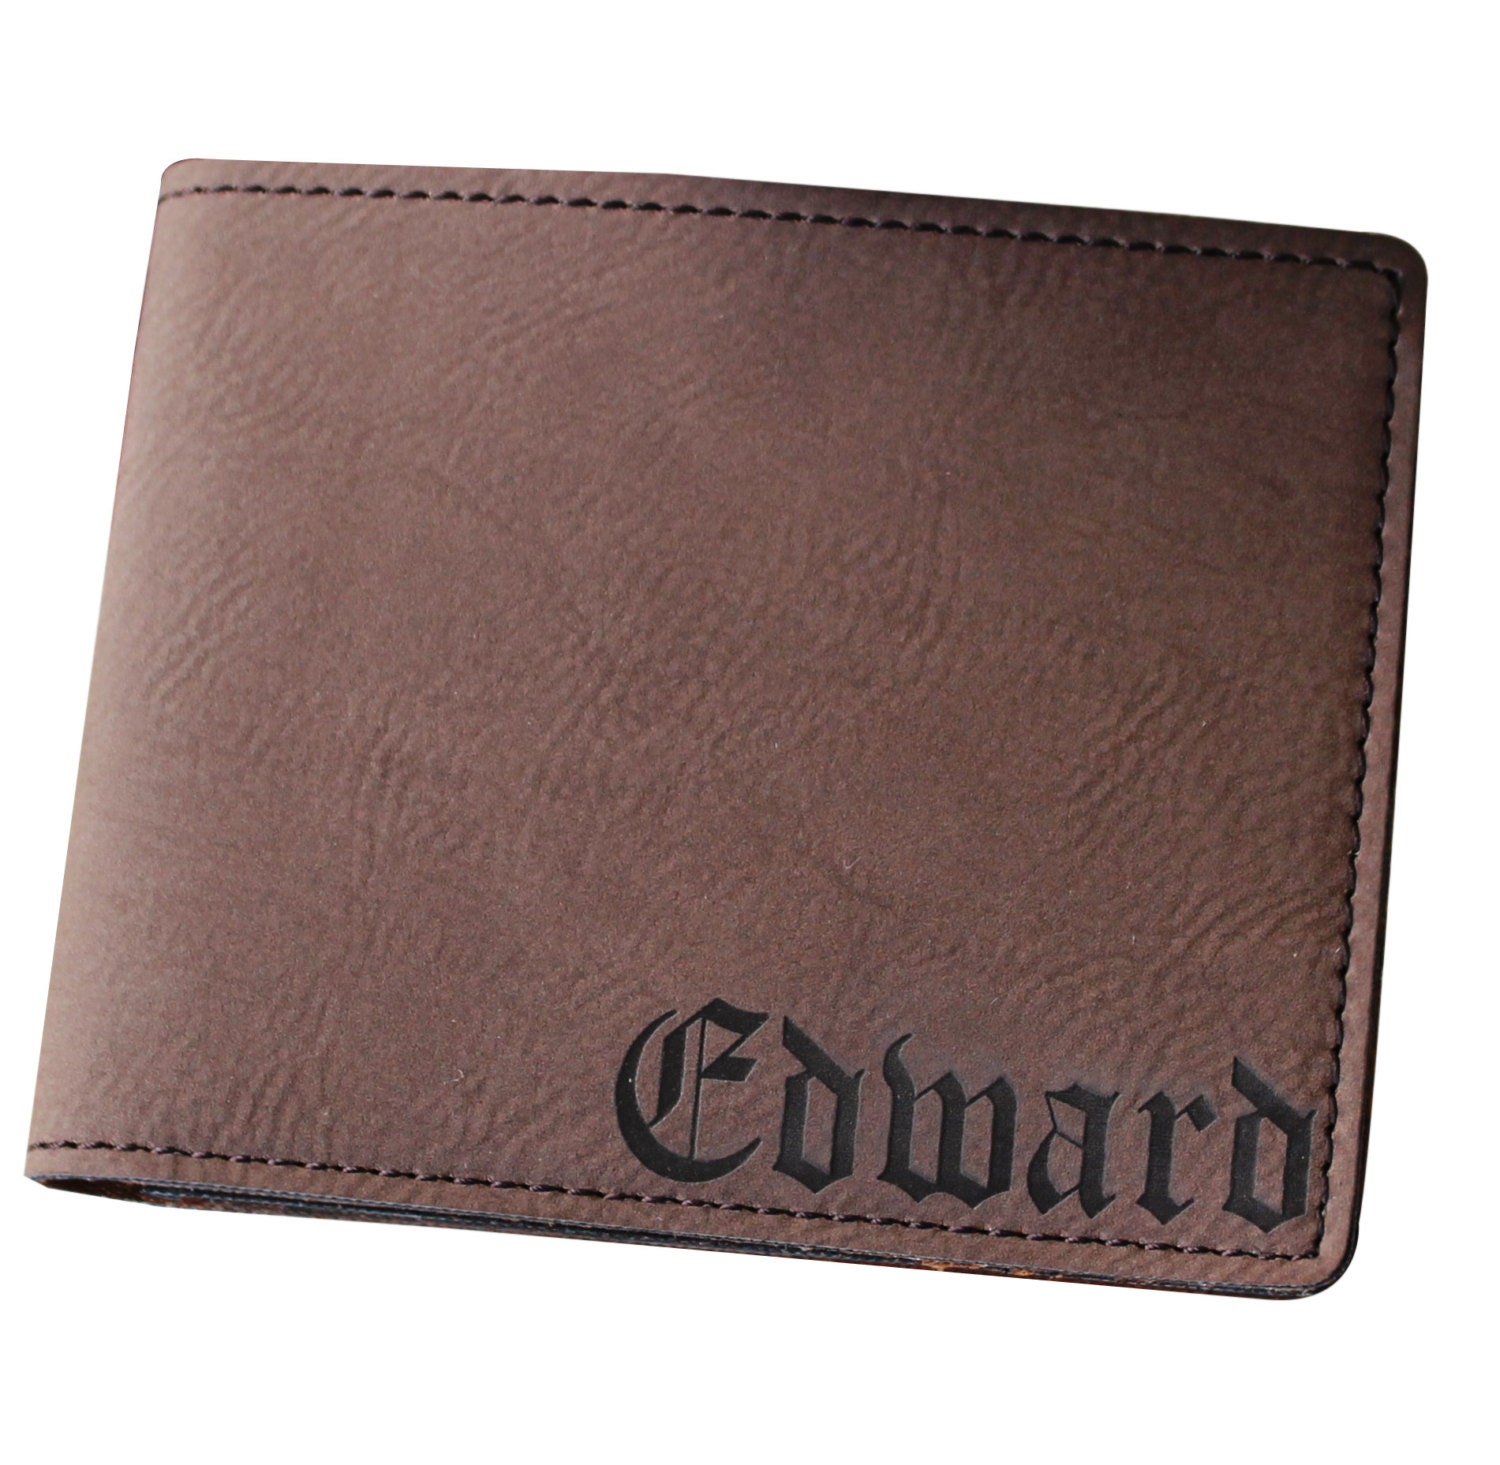 Mens Wallet Personalized Leather Wallet Groomsmen Wallet